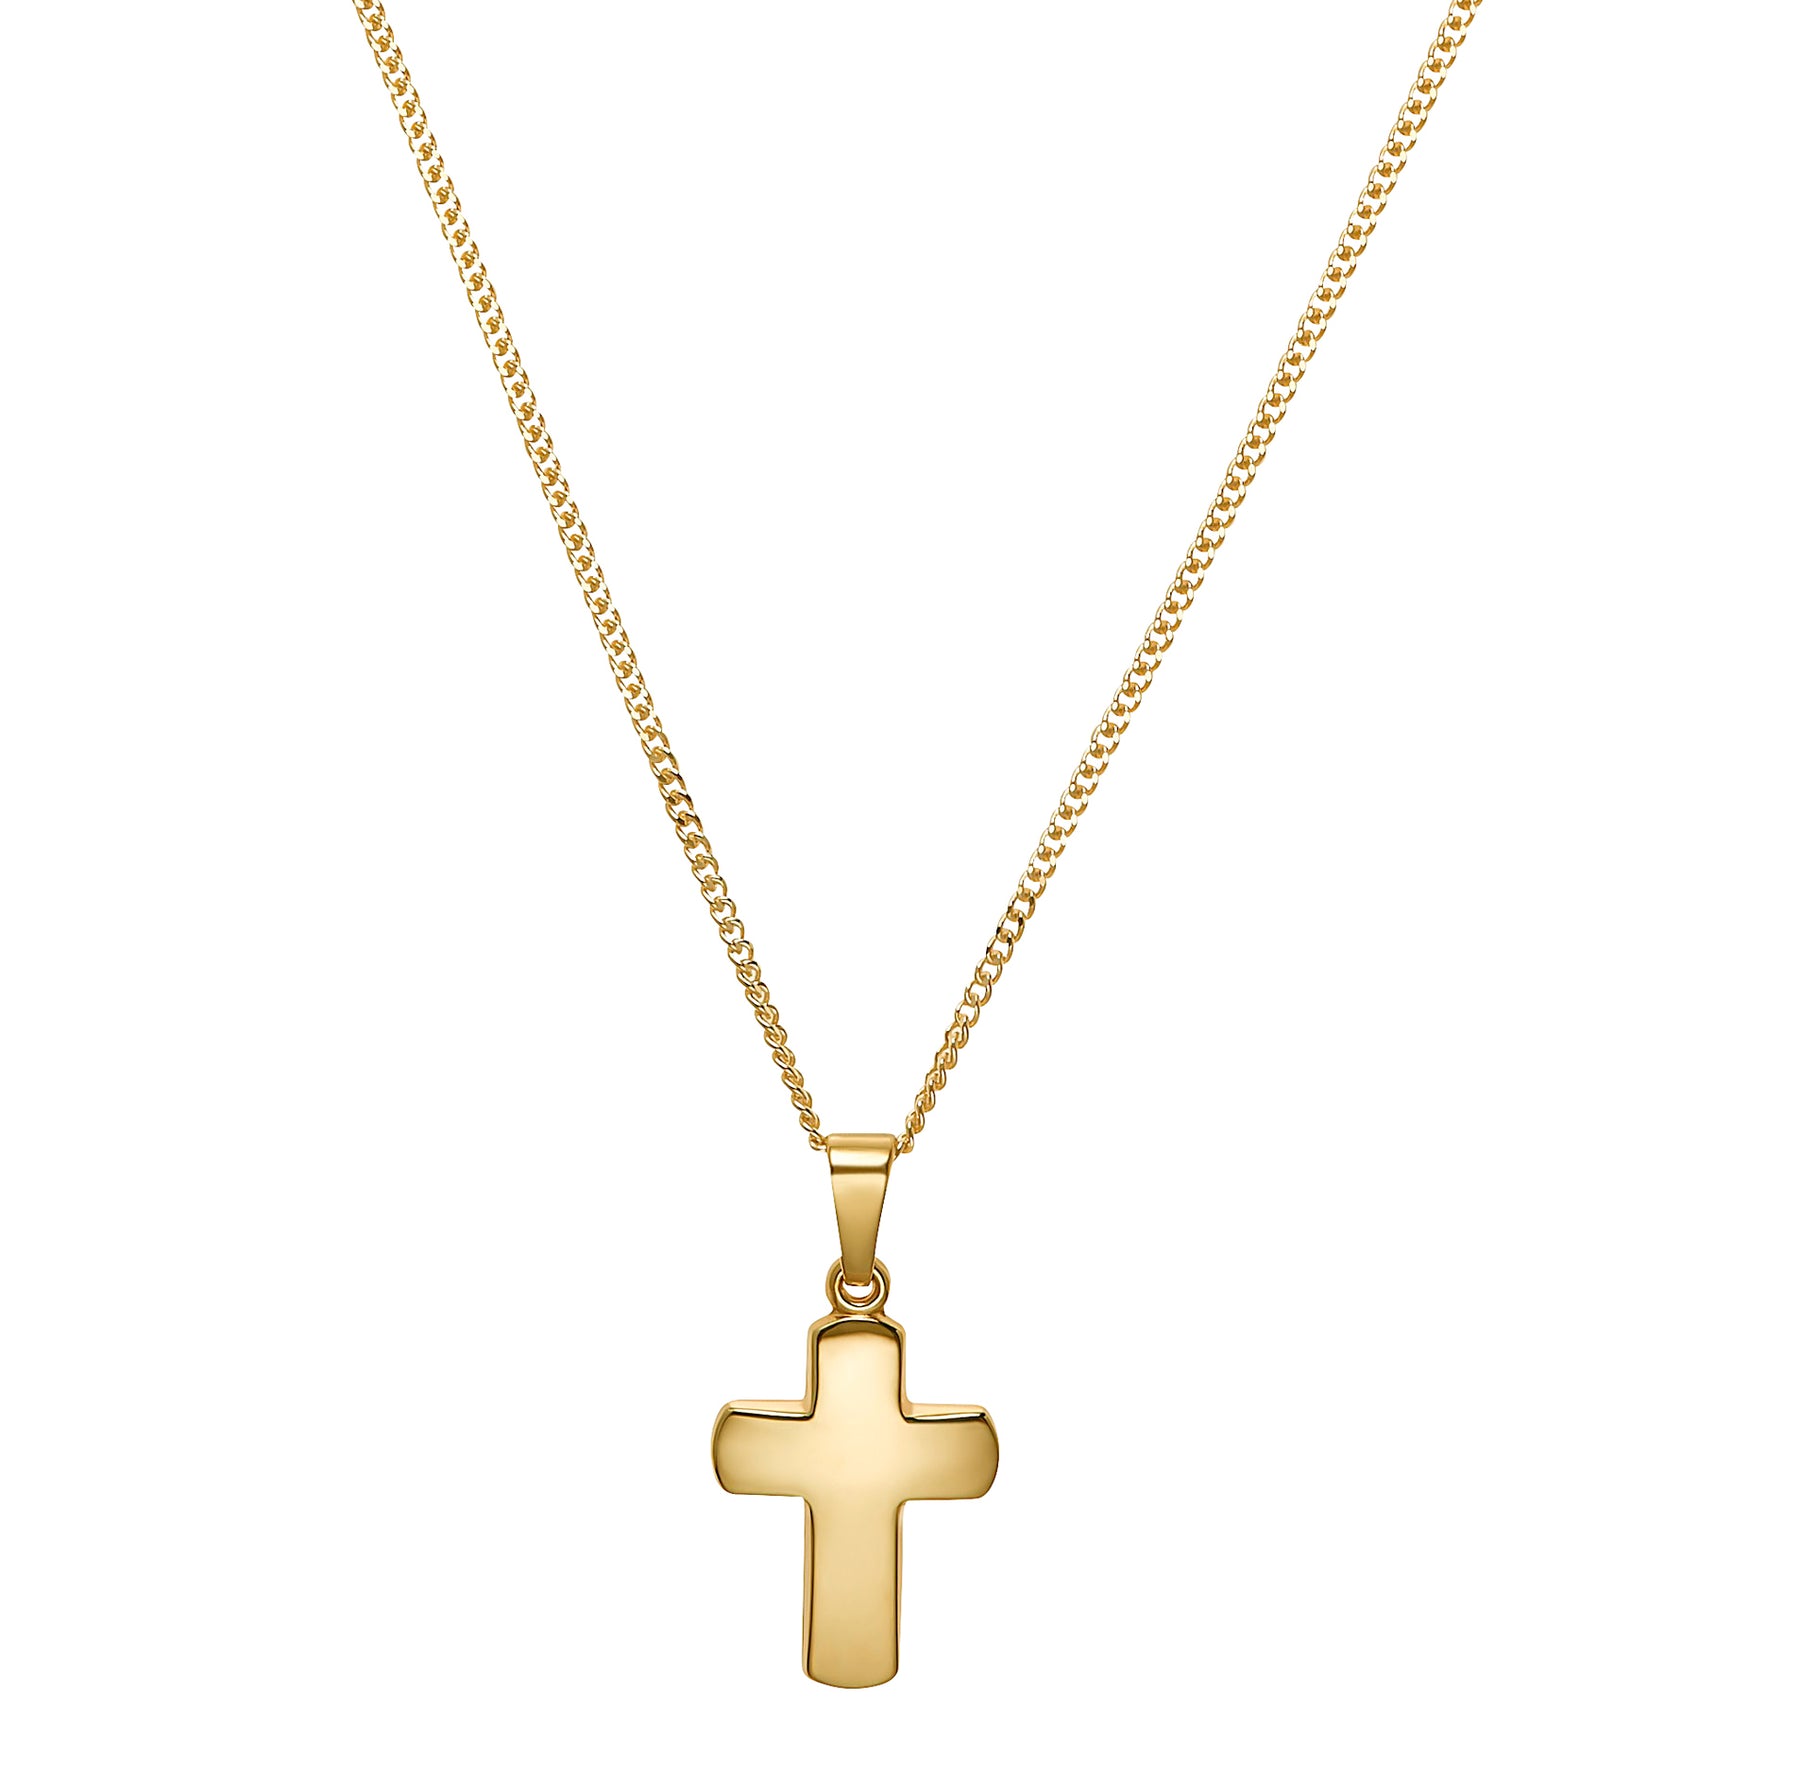 JEVELION Kreuzkette Kreuz Anhänger 333 Gold - Made in Germany  (Goldanhänger, für Damen und Herren), Mit Kette vergoldet- Länge wählbar 36  - 70 cm.